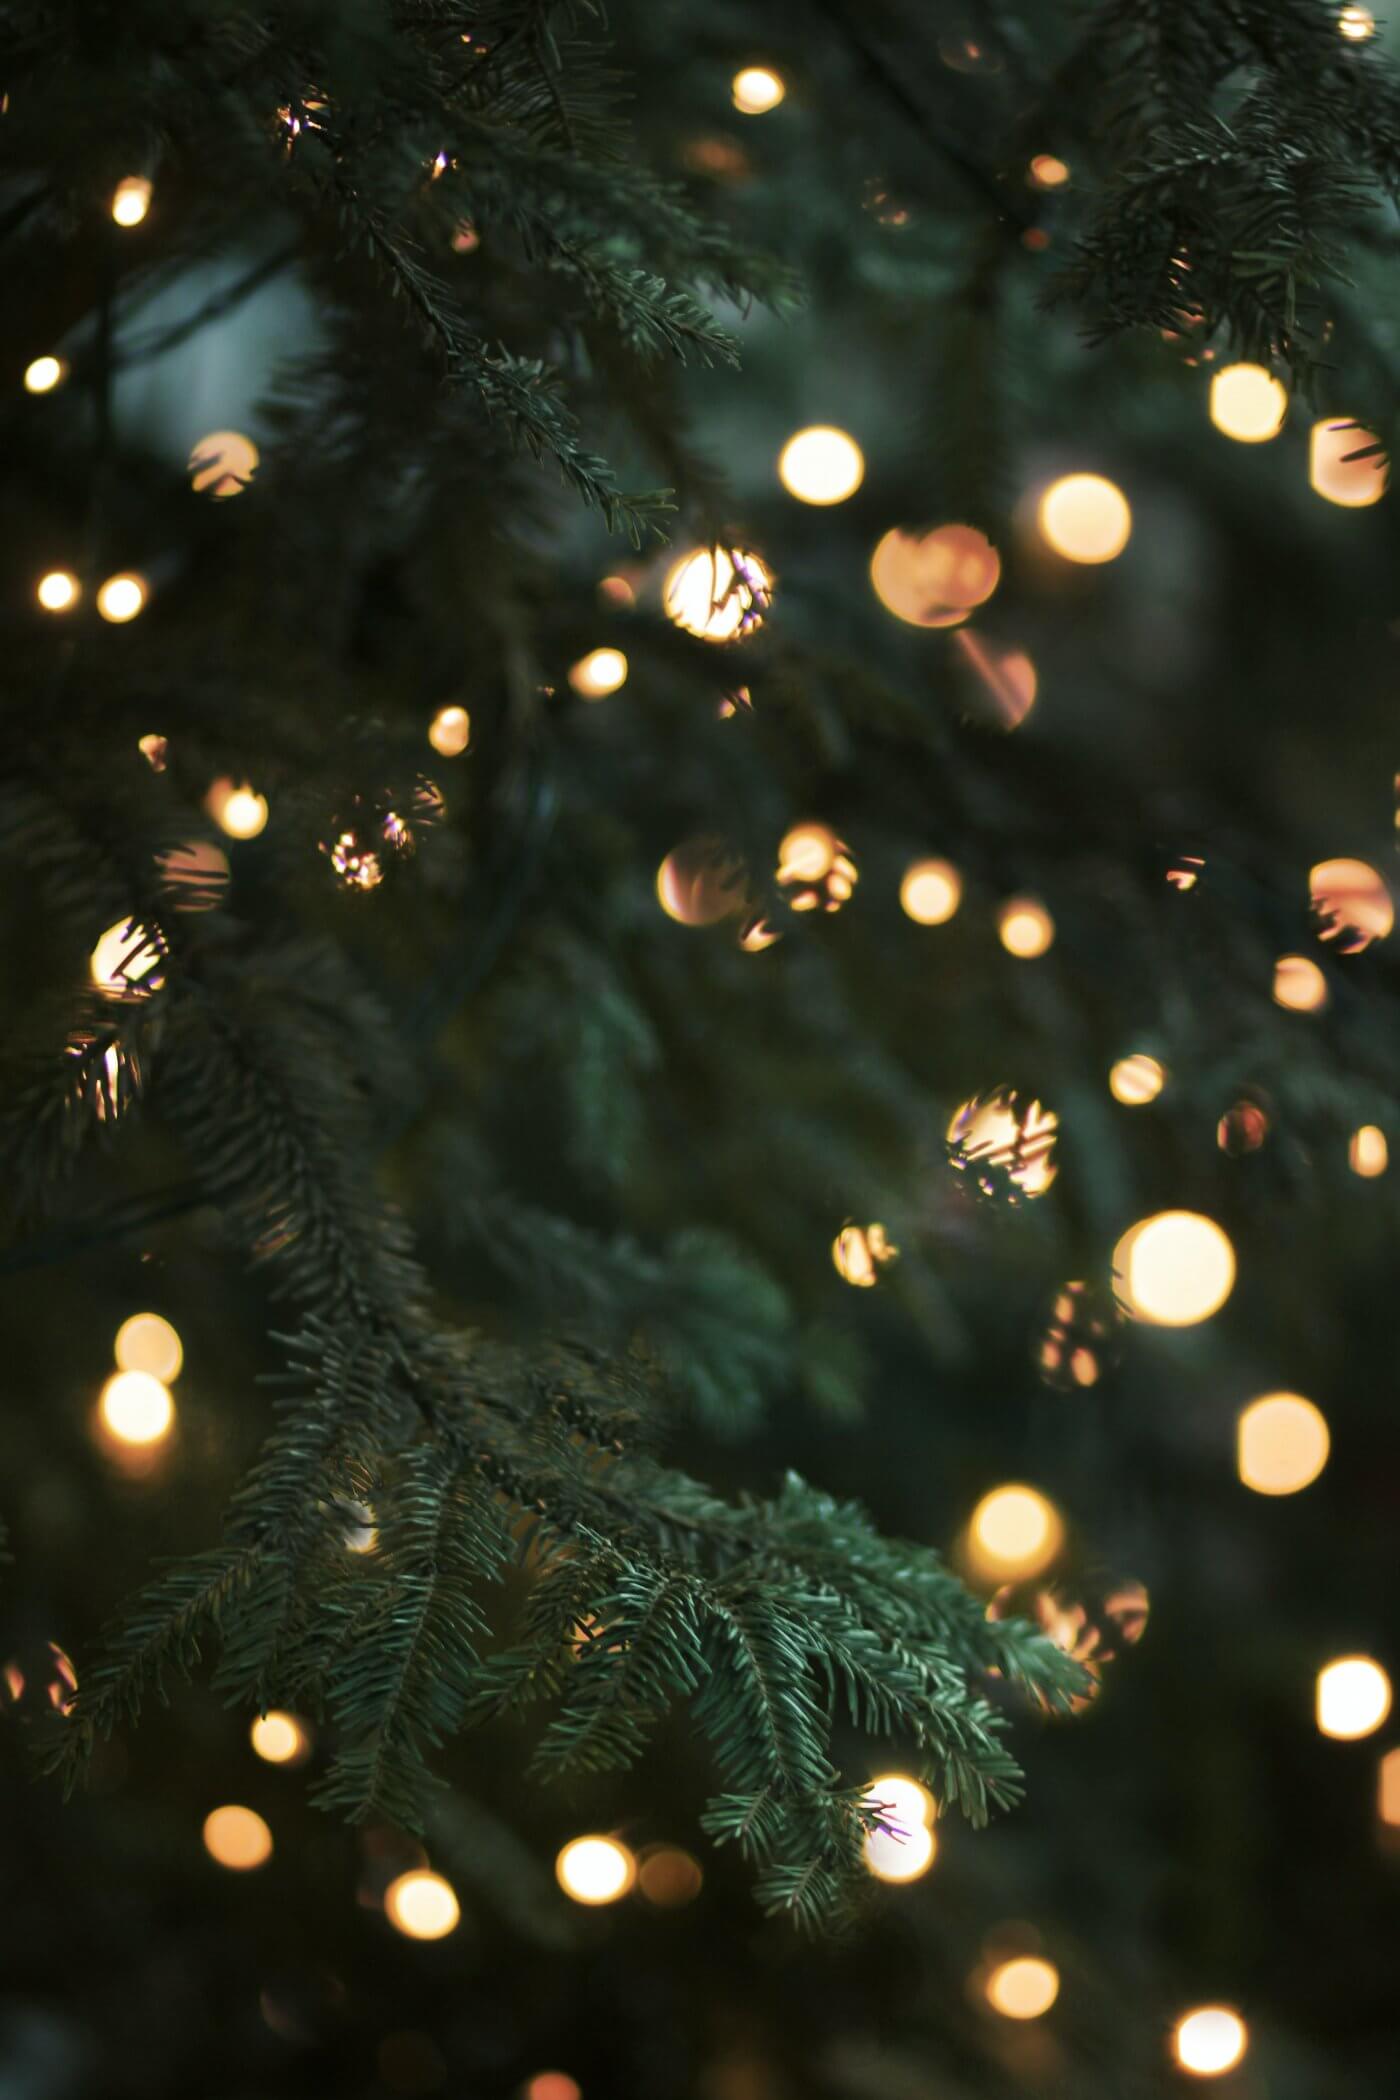 Hoe ziet jouw kerstboom er dit jaar uit?